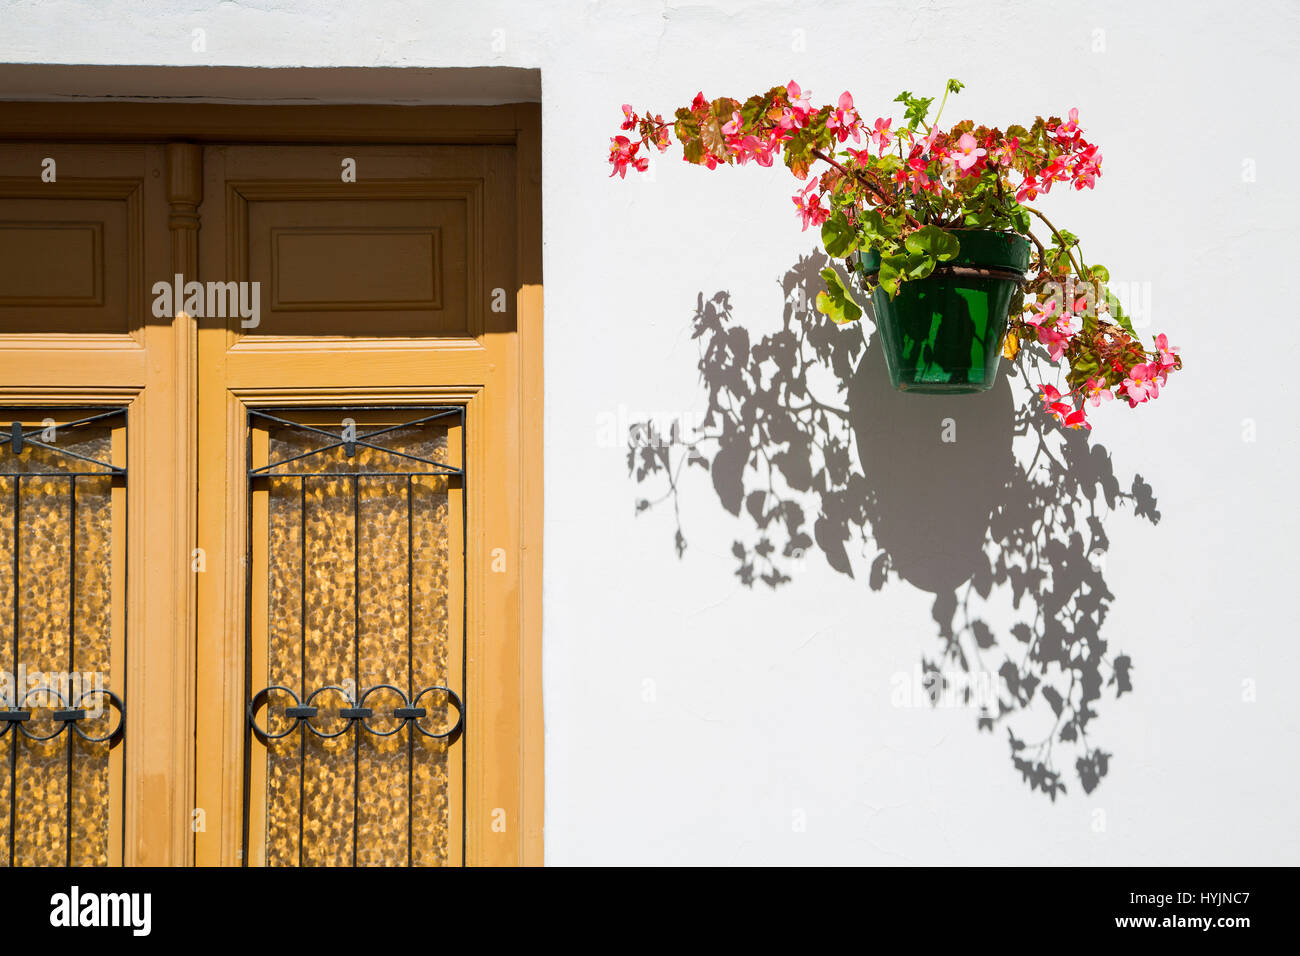 Vaso fiorito, porta e parete bianca, Estepona. Malaga provincia Costa del Sol. Andalusia Spagna meridionale, Europa Foto Stock